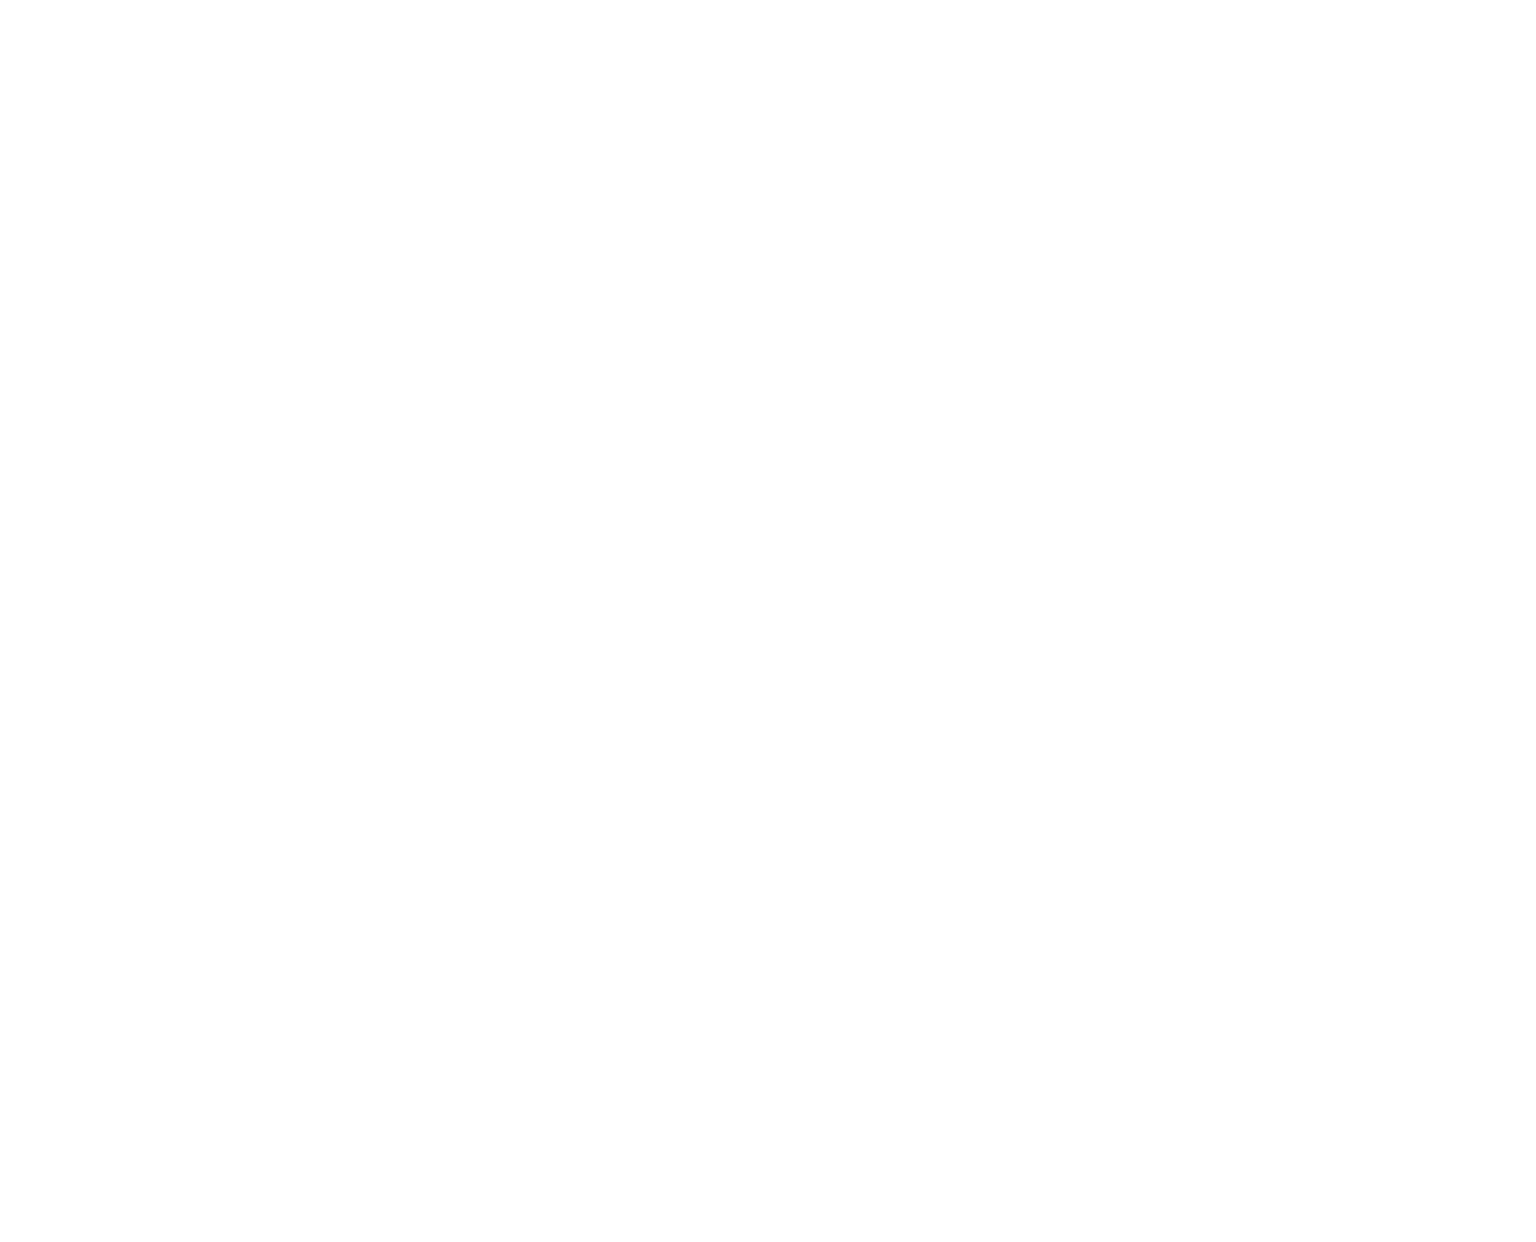 Pinktie logo wreath around white